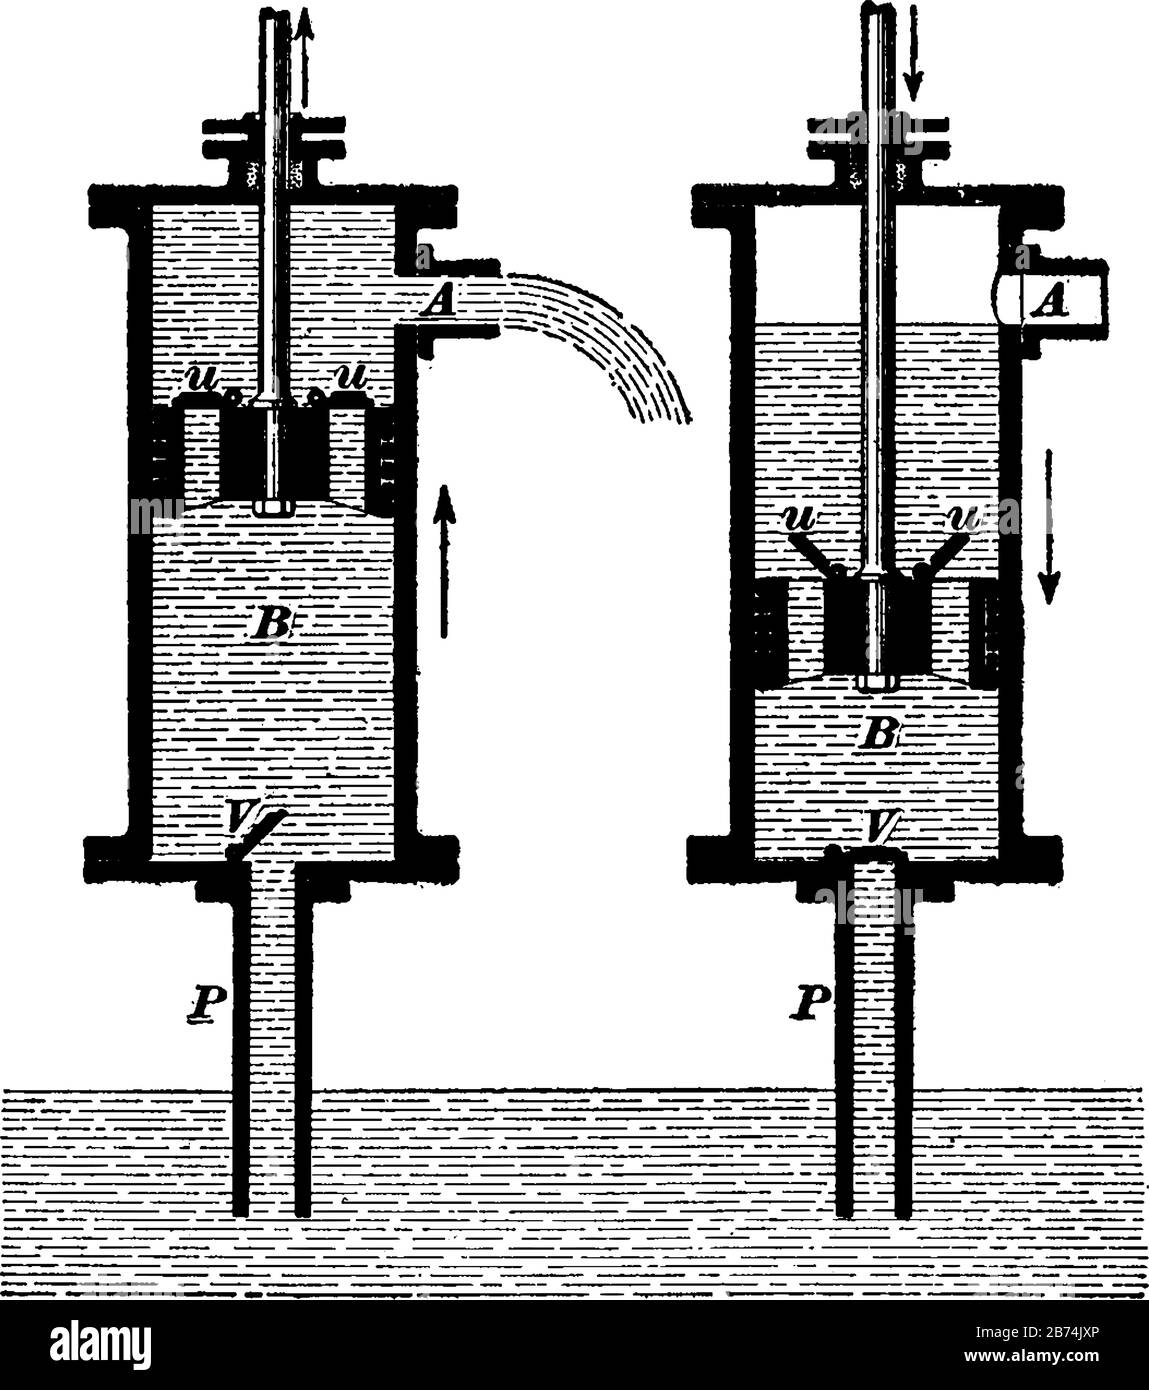 Diese Abbildung stellt Die Saugpumpe dar, bei der eine Pumpe zum